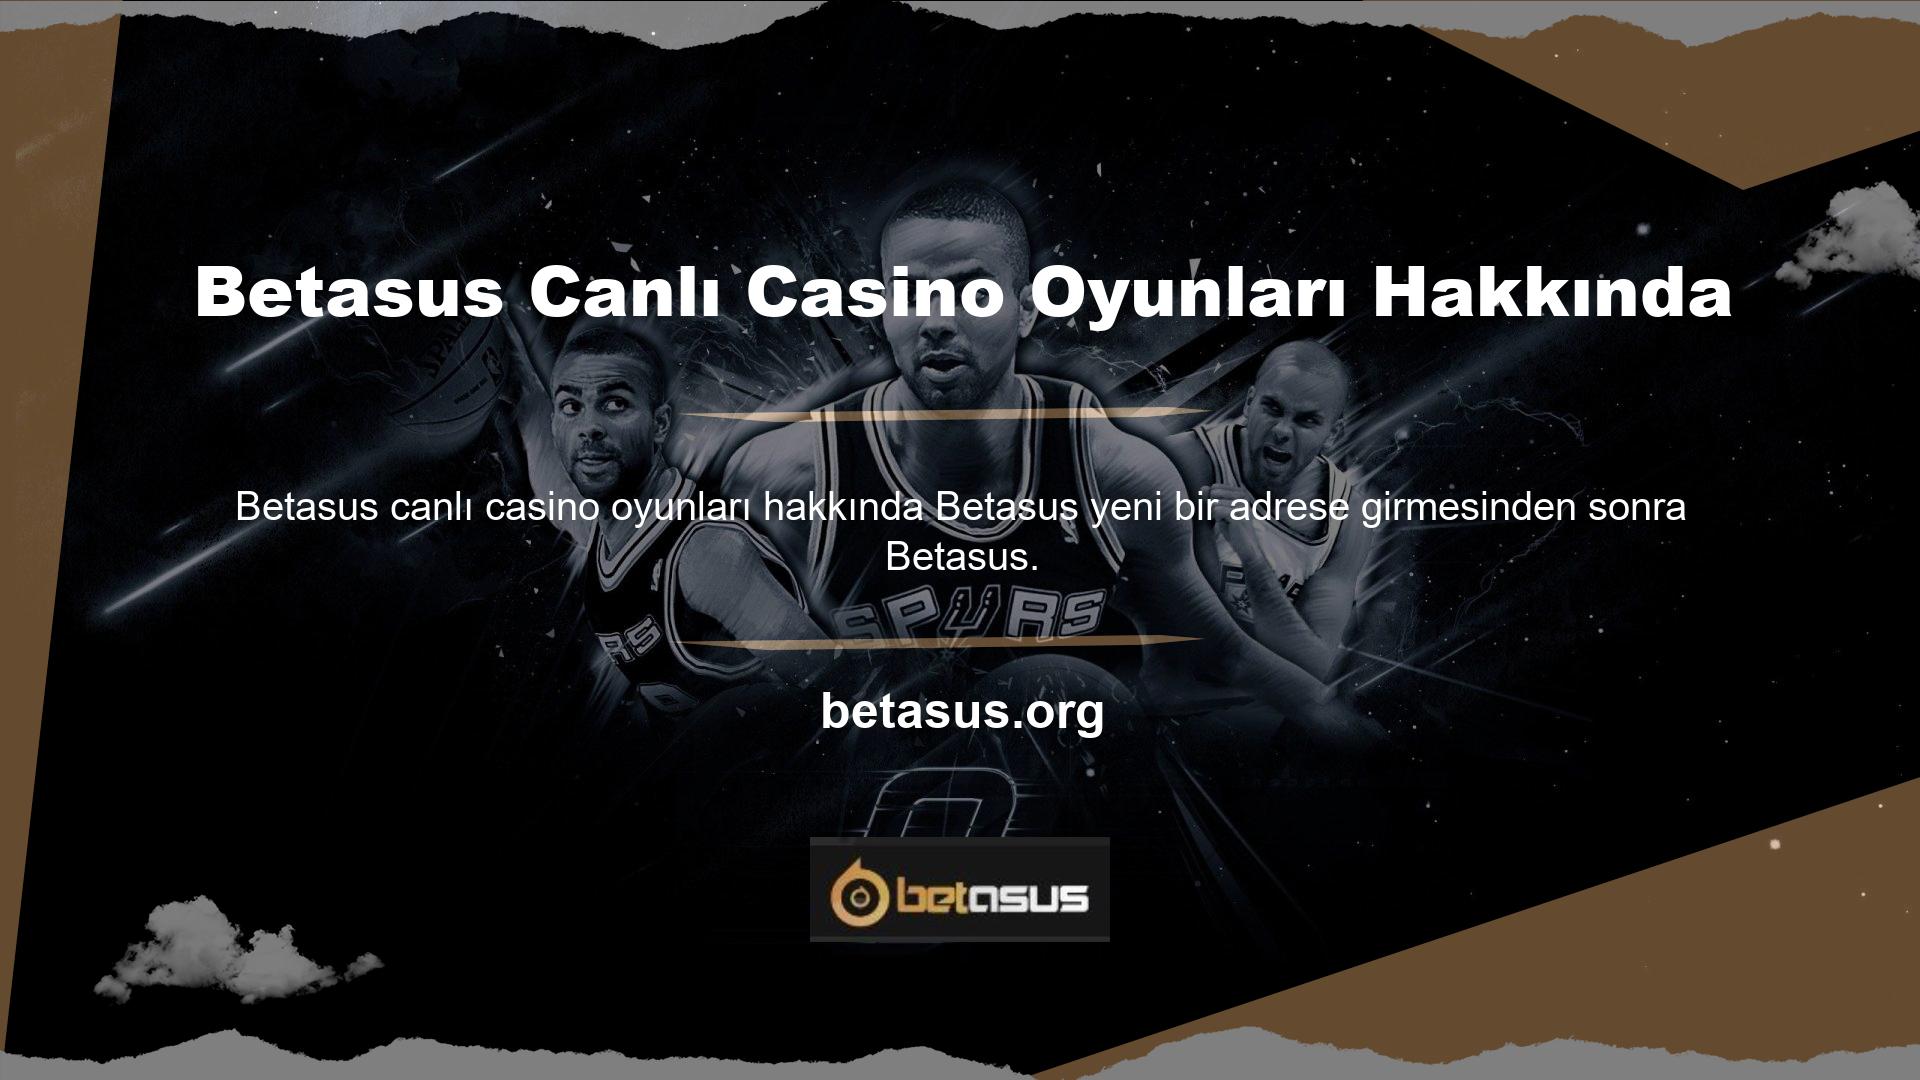 com olarak yoluna devam eden ve Betasus Canlı Casino ve Canlı Oyunlar bölümüne yeniden hizmet veren, kullanıcılara oyun oynama imkanı sunan bir çevrimiçi bahis sitesidir